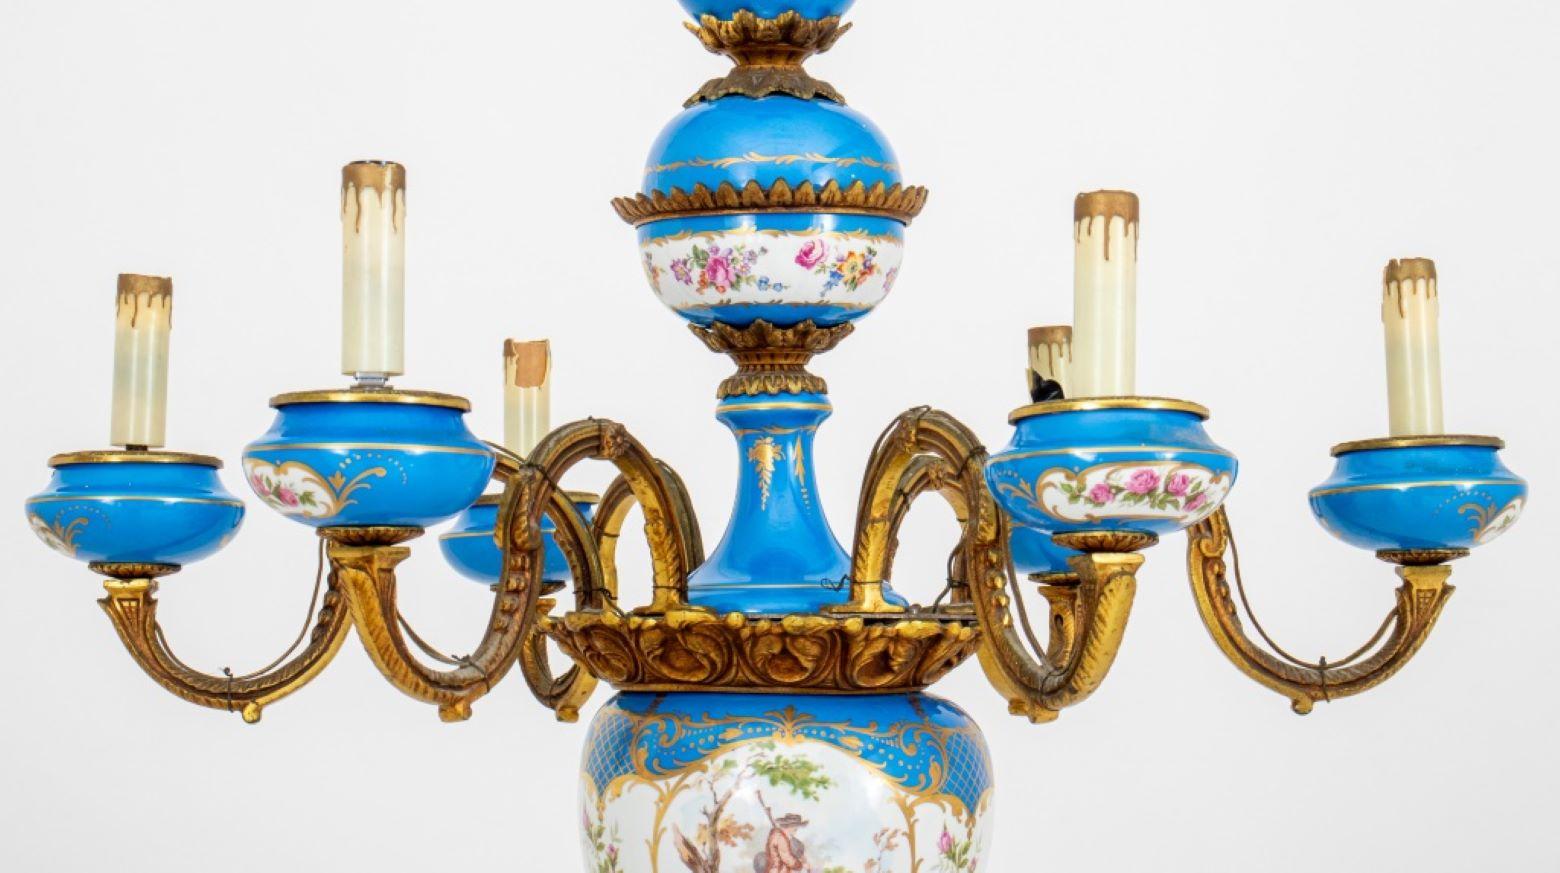 Belle Epoque Sèvres Sechs-Licht-Porzellan und Ormolu Kronleuchter, 20. Jahrhundert, mit handgemalten Balzszenen und vergoldeten Akzenten, Porzellan markiert und signiert. 44